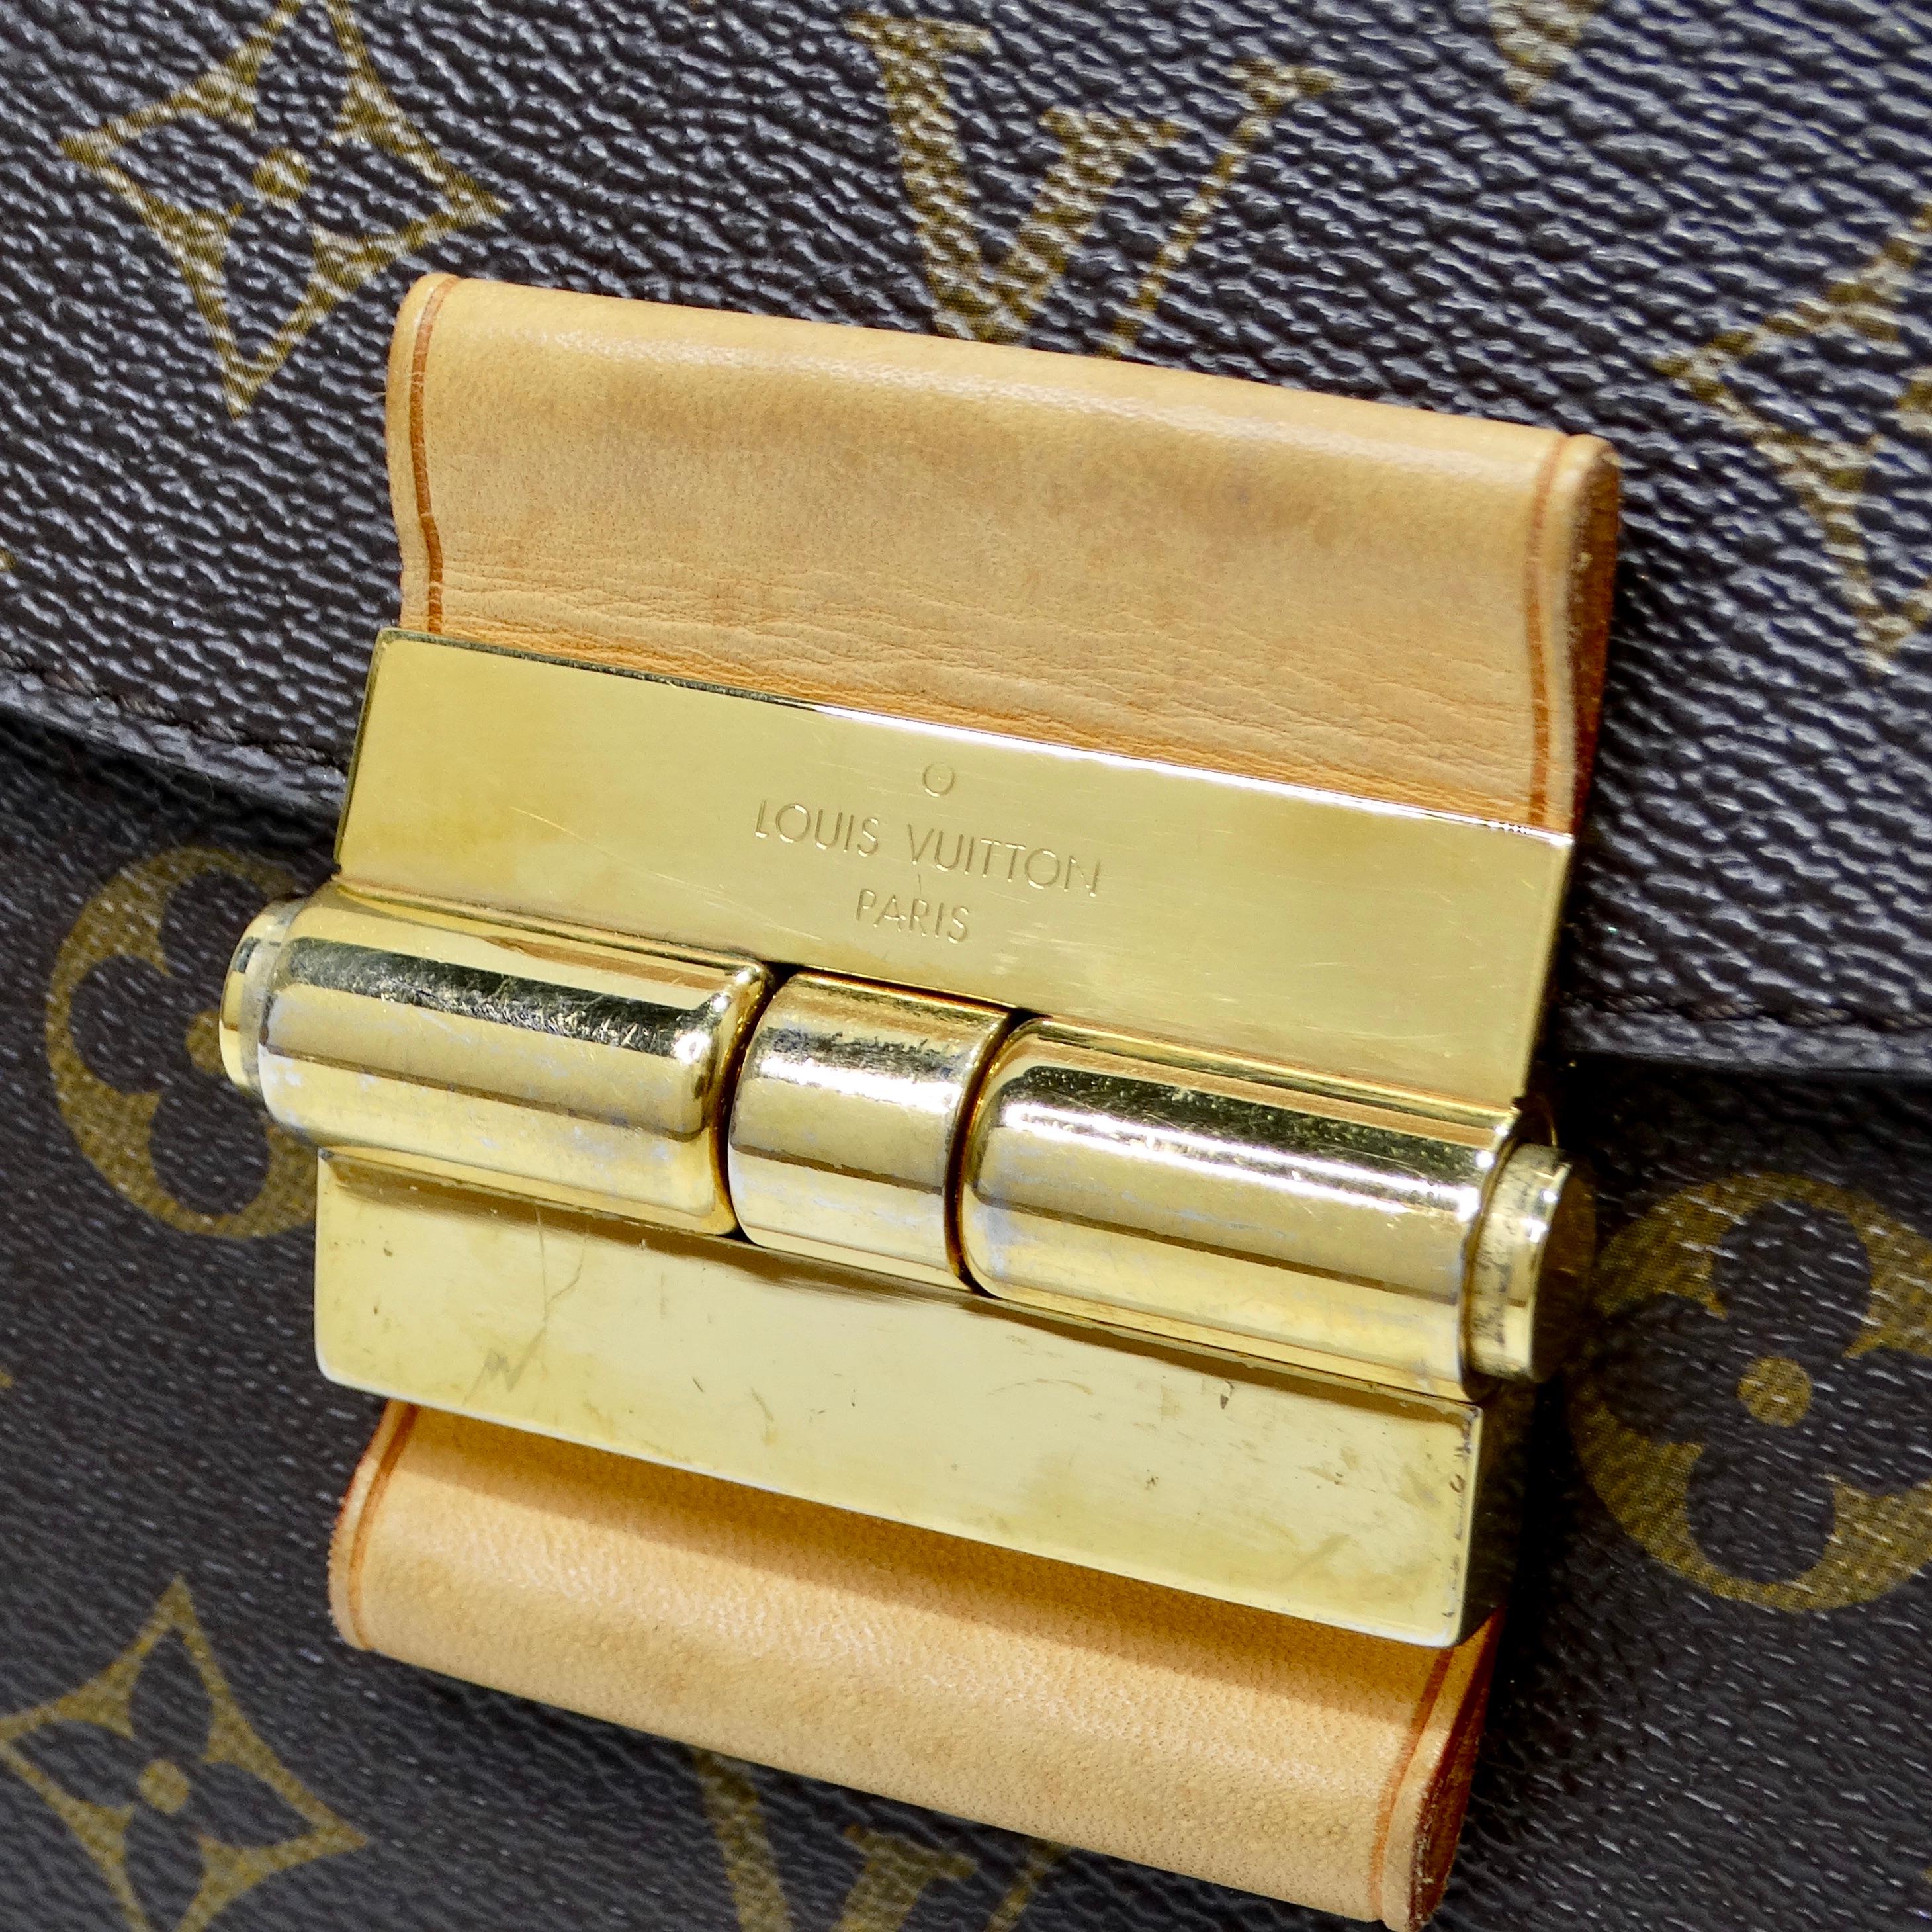 Die Louis Vuitton Monogram Olympe Havane Handtasche ist ein zeitloses und vielseitiges Accessoire, das Raffinesse und Eleganz ausstrahlt. Diese Umhängetasche aus dem ikonischen Louis Vuitton Monogram auf Toile Canvas verkörpert das Erbe und die